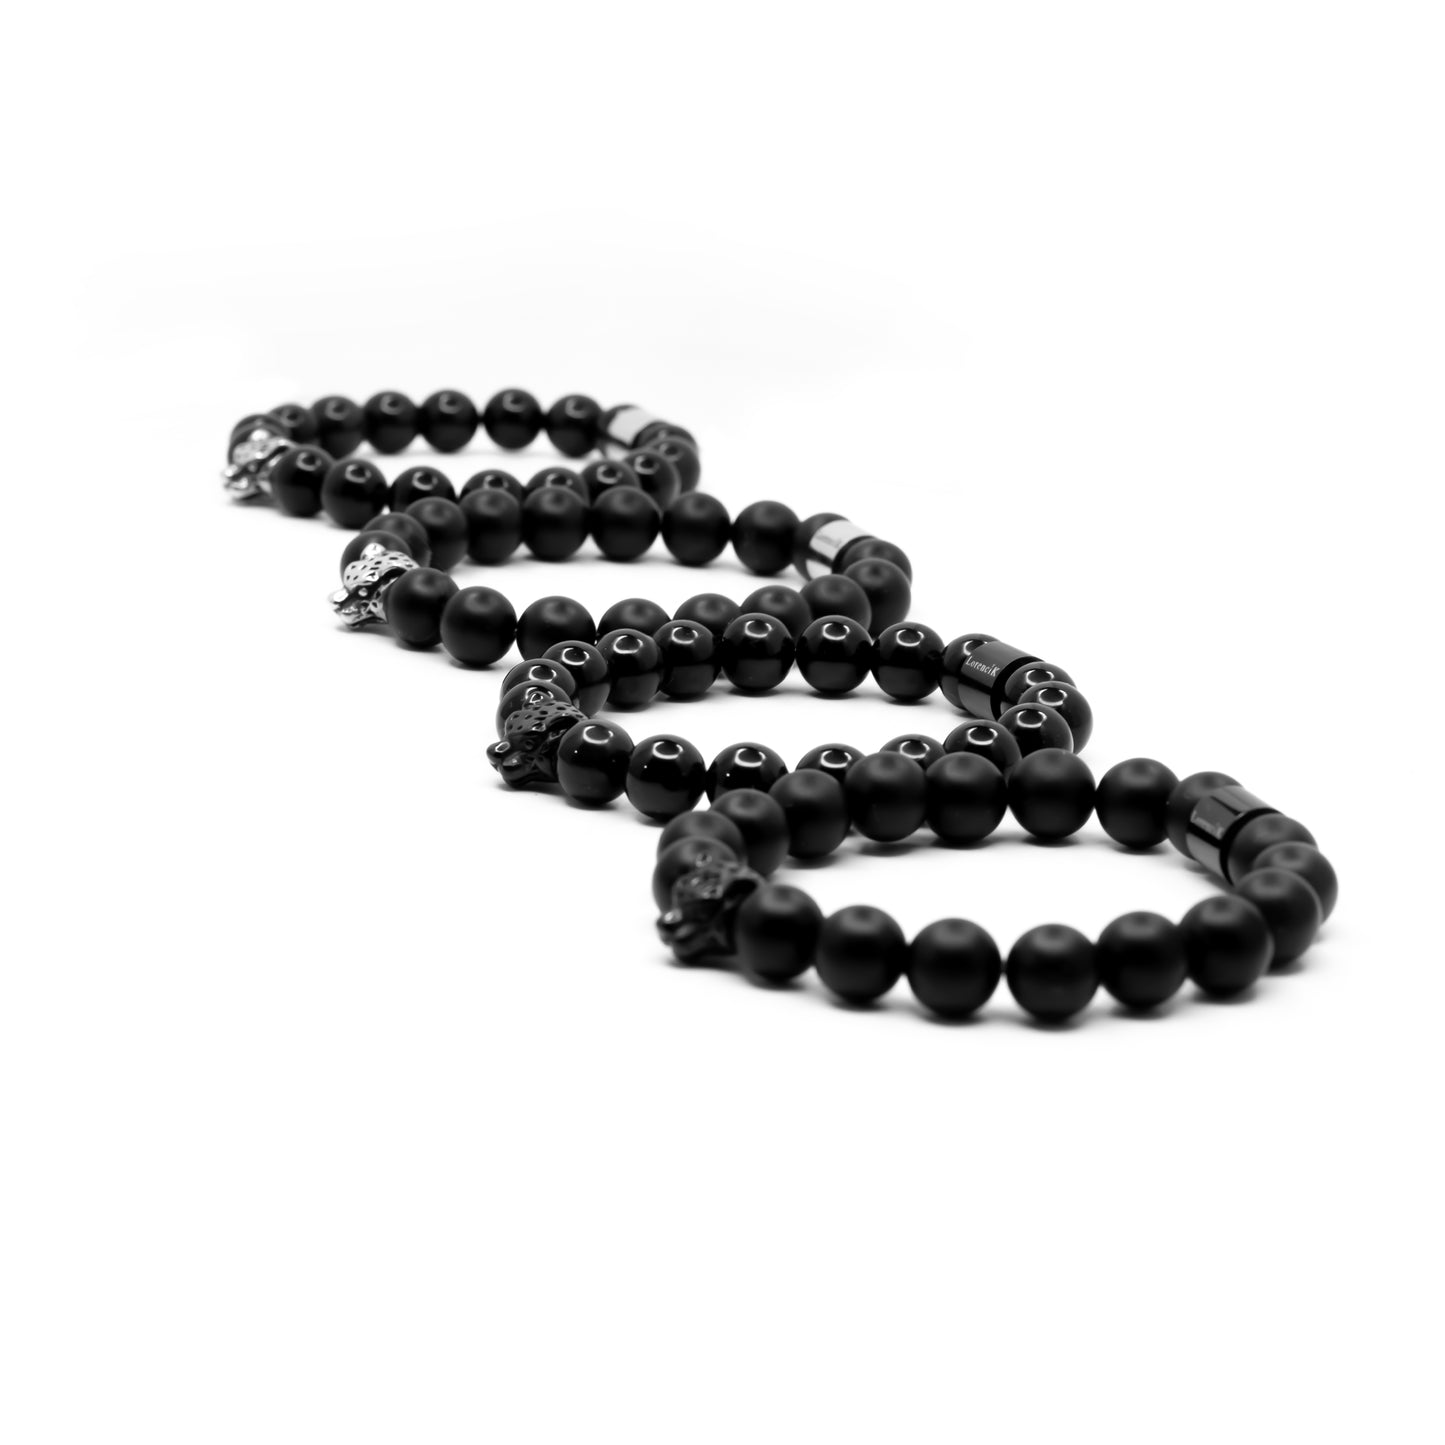 Der erste Neuzugang aus der neuen Kollektion zeigt sich, mit seinen glänzenden Obsidian-Perlen und dem schwarzen Edelstahl-Bead, in einem besonderen Design.